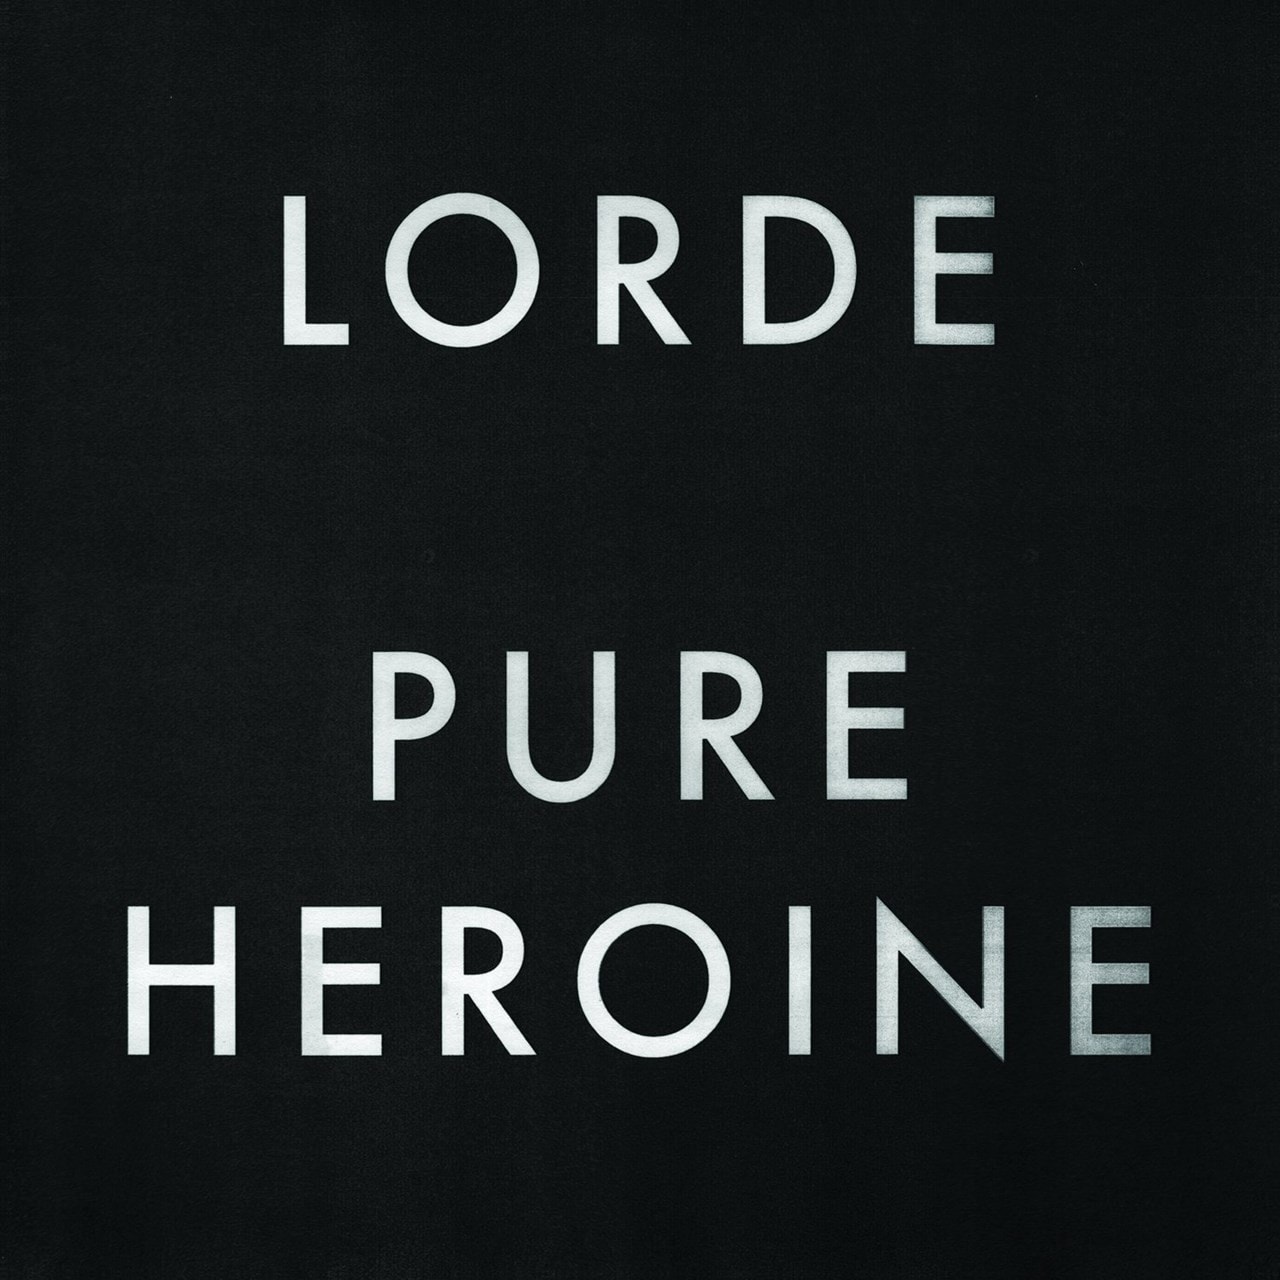 lorde pure heroine full album torrent download